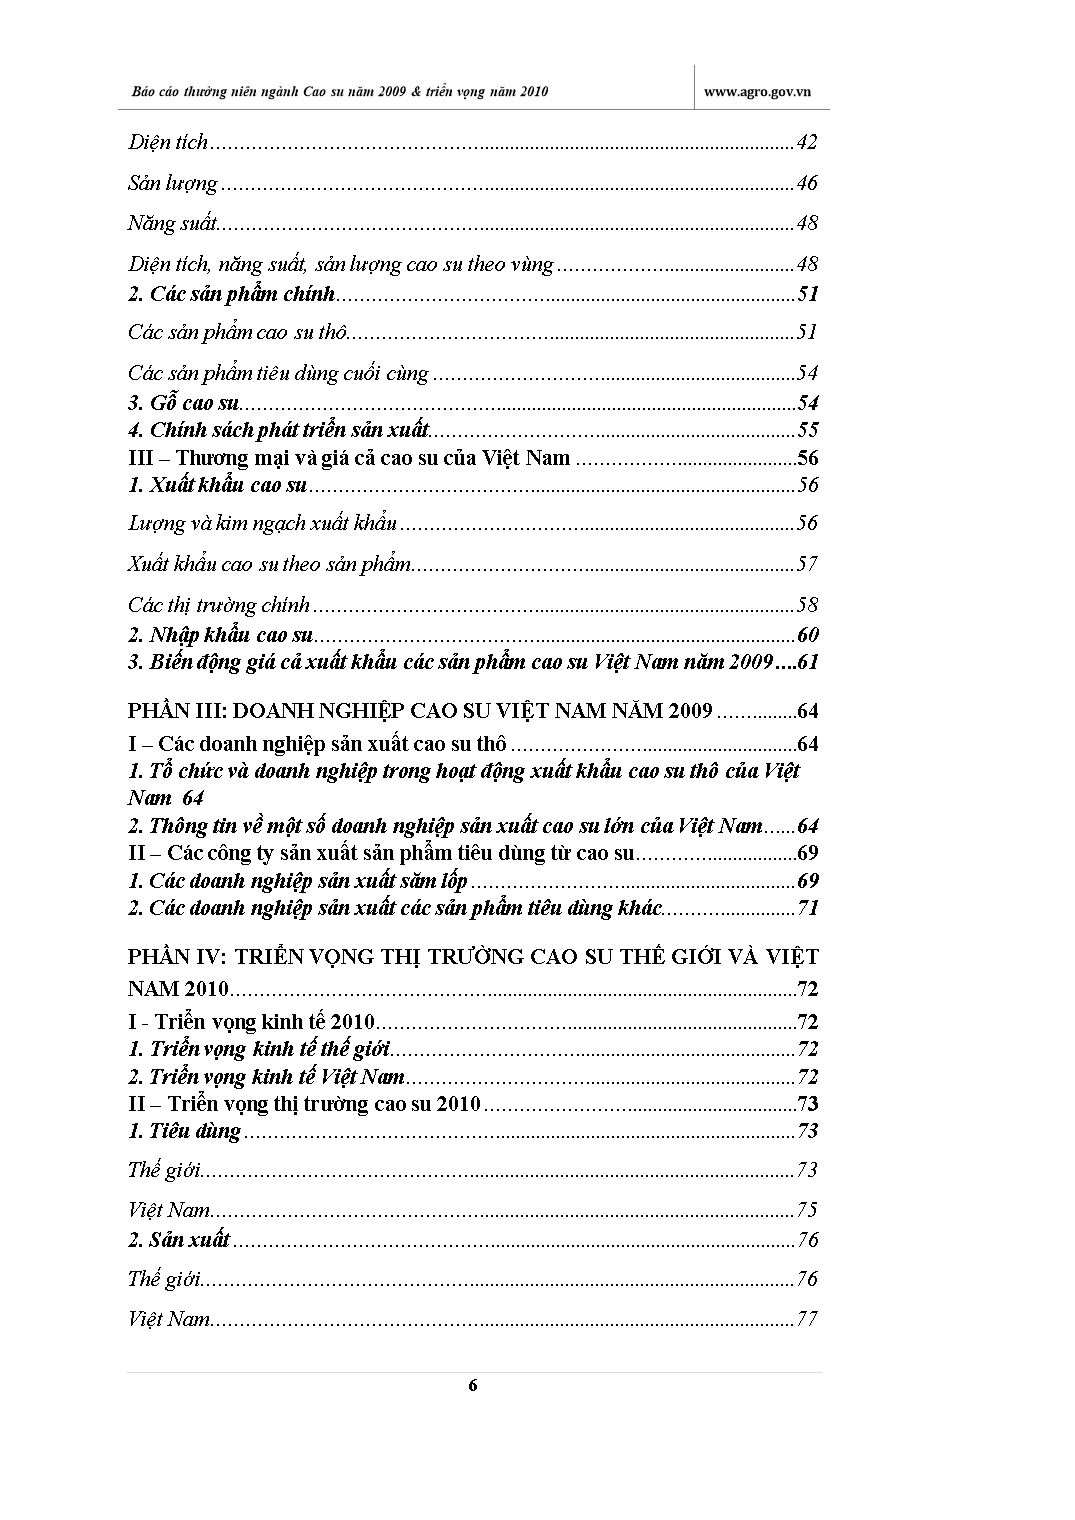 Báo cáo thường niên ngành Cao su năm 2009 và triển vọng năm 2010 trang 6